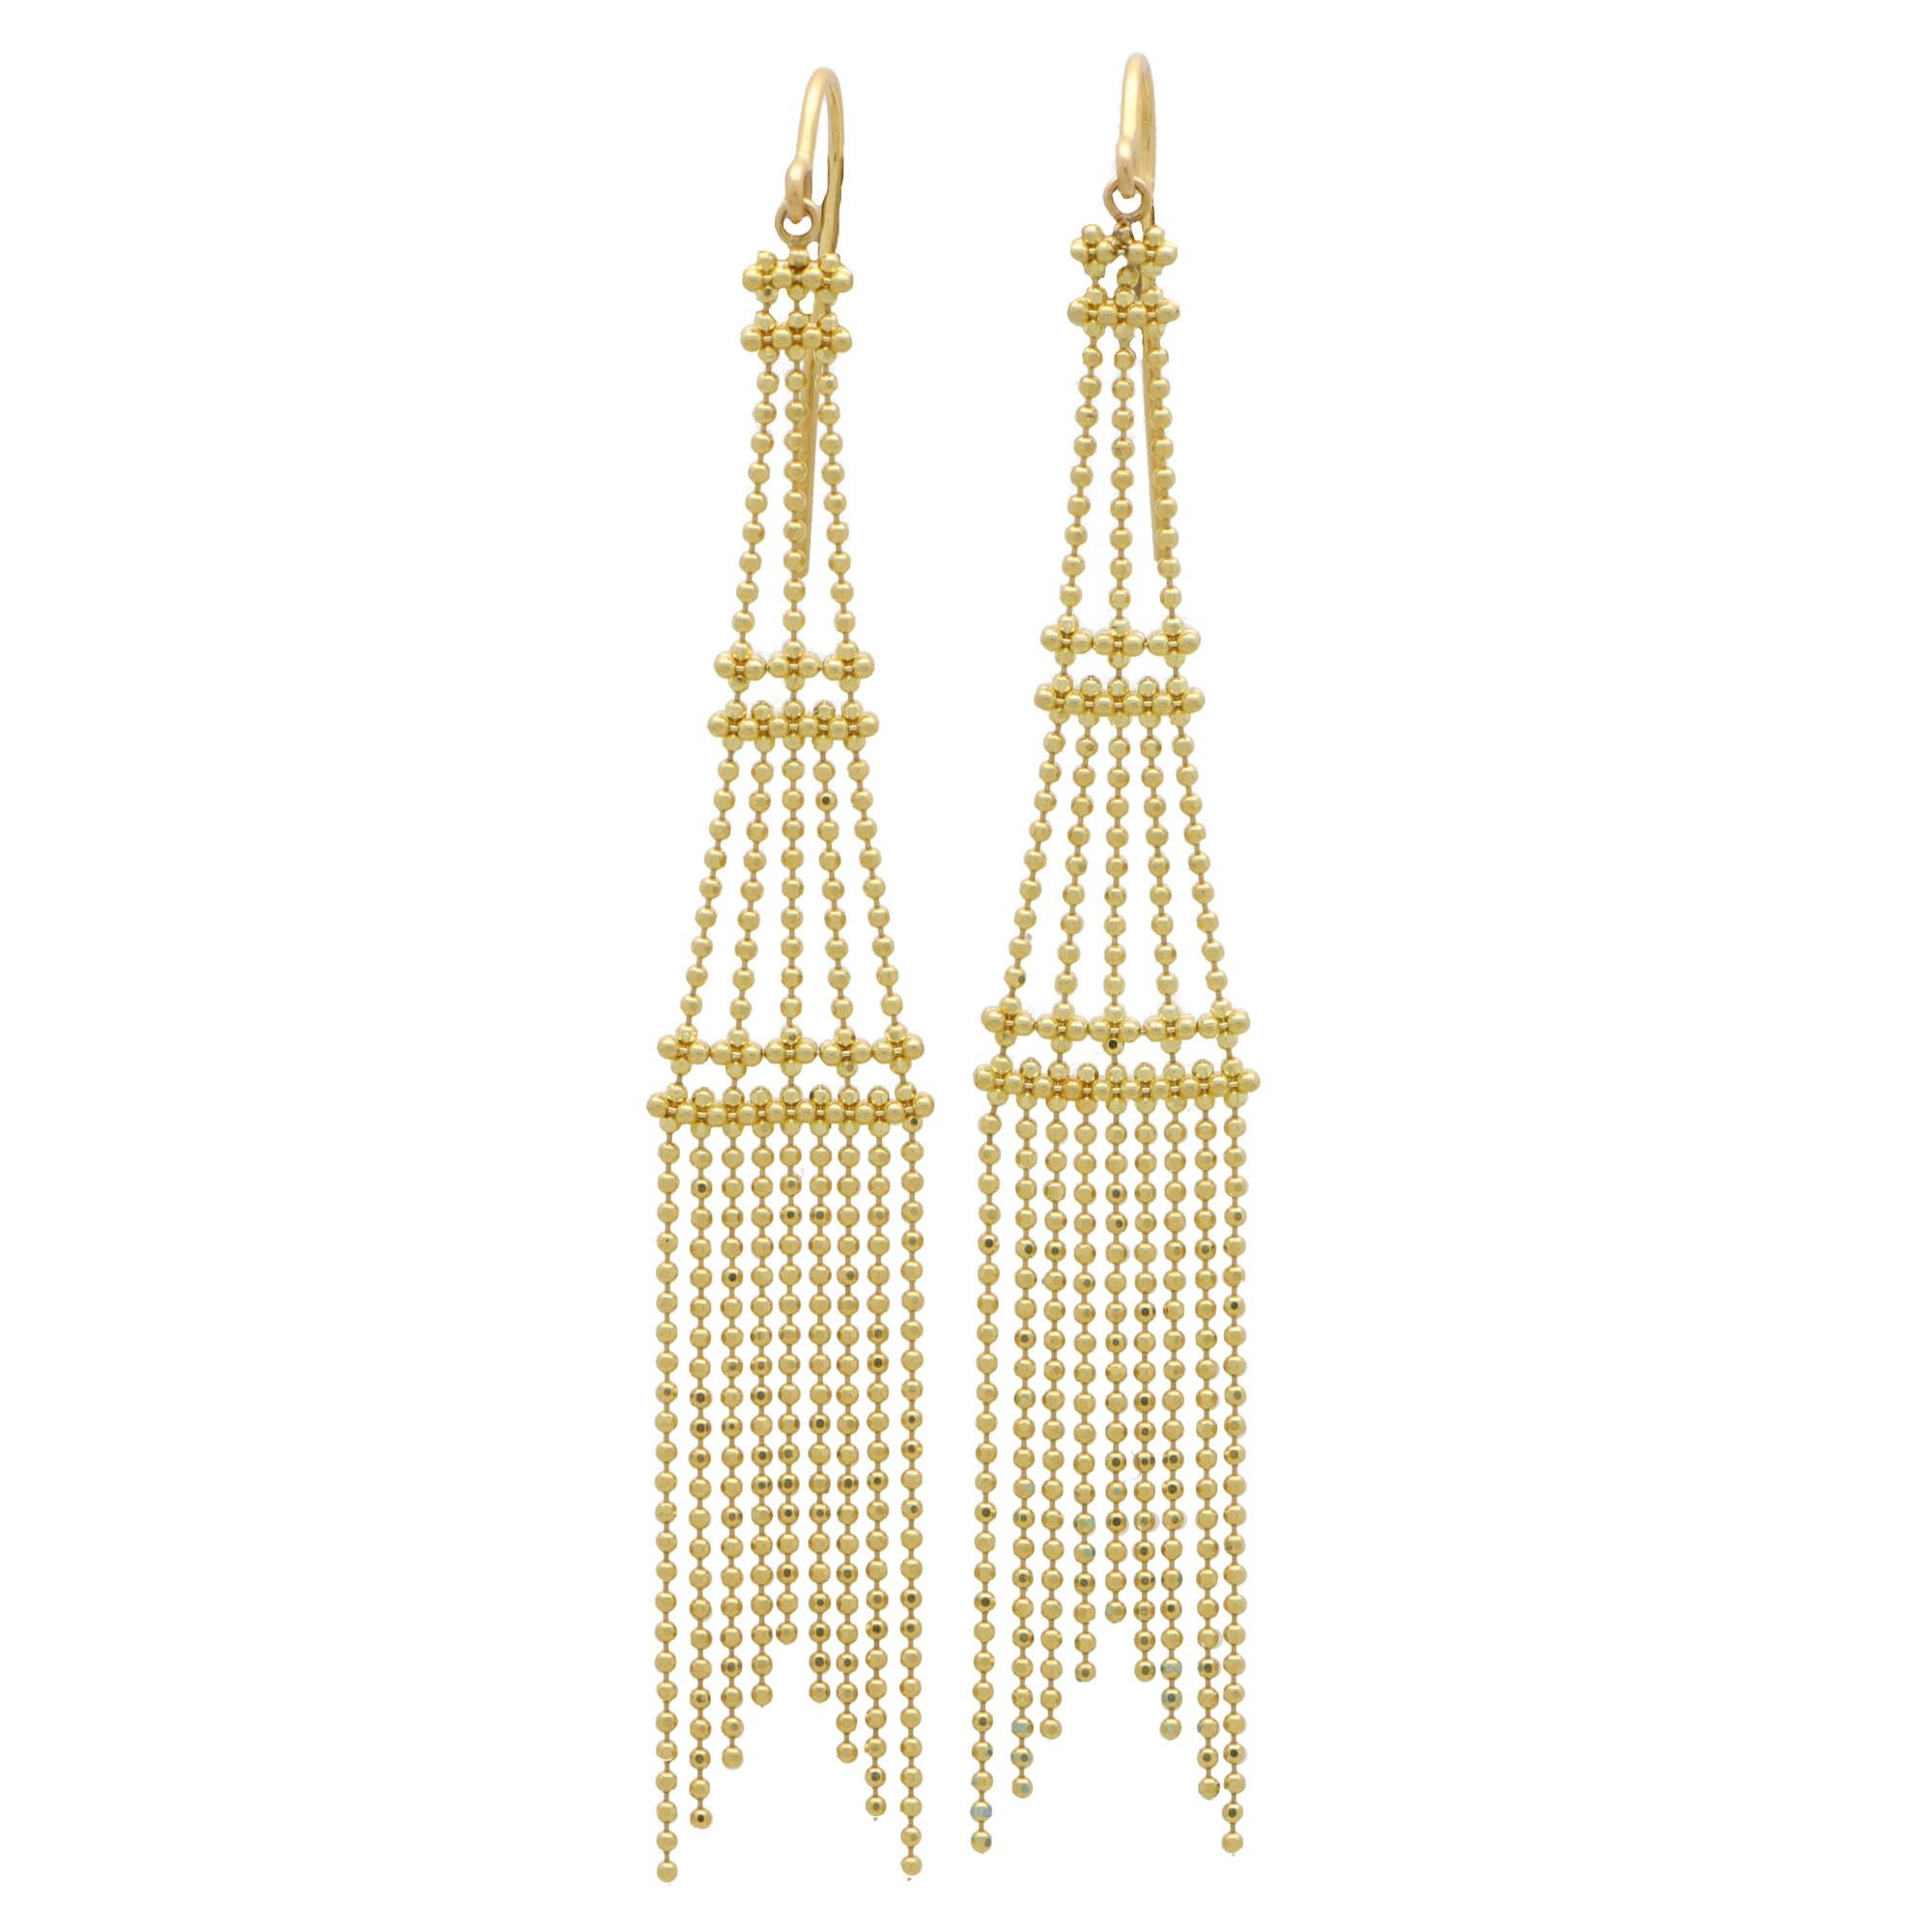 Vintage Tiffany & Co. Tassel Chandelier Drop Earrings Set in 18k Yellow Gold